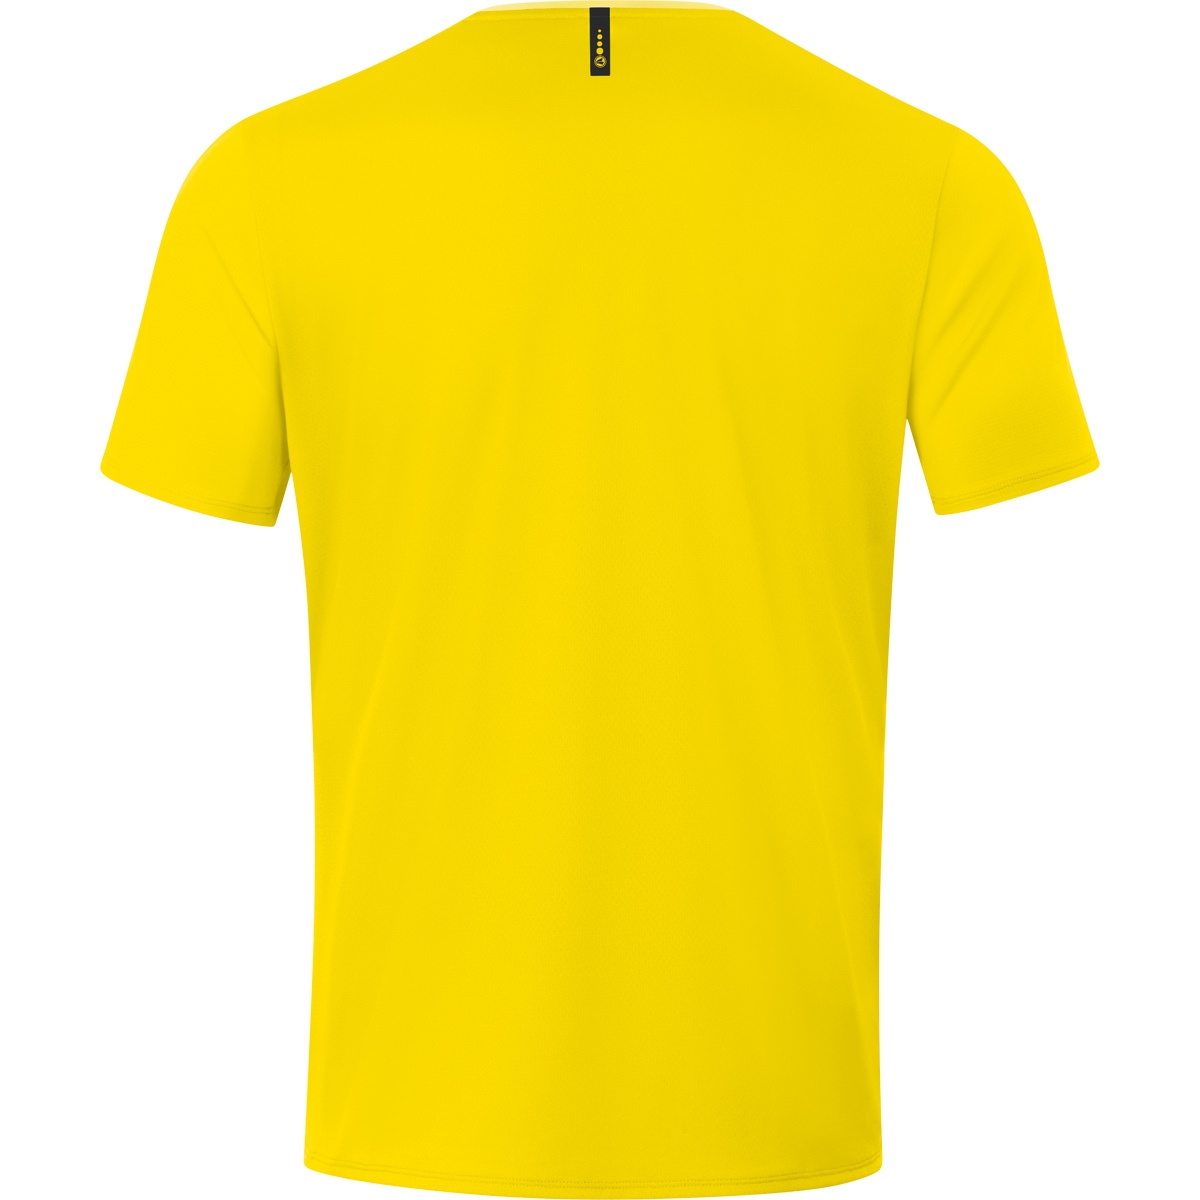 JAKO T-Shirt 3XL, 2.0 citro/citro light, Herren, Gr. Champ 6120